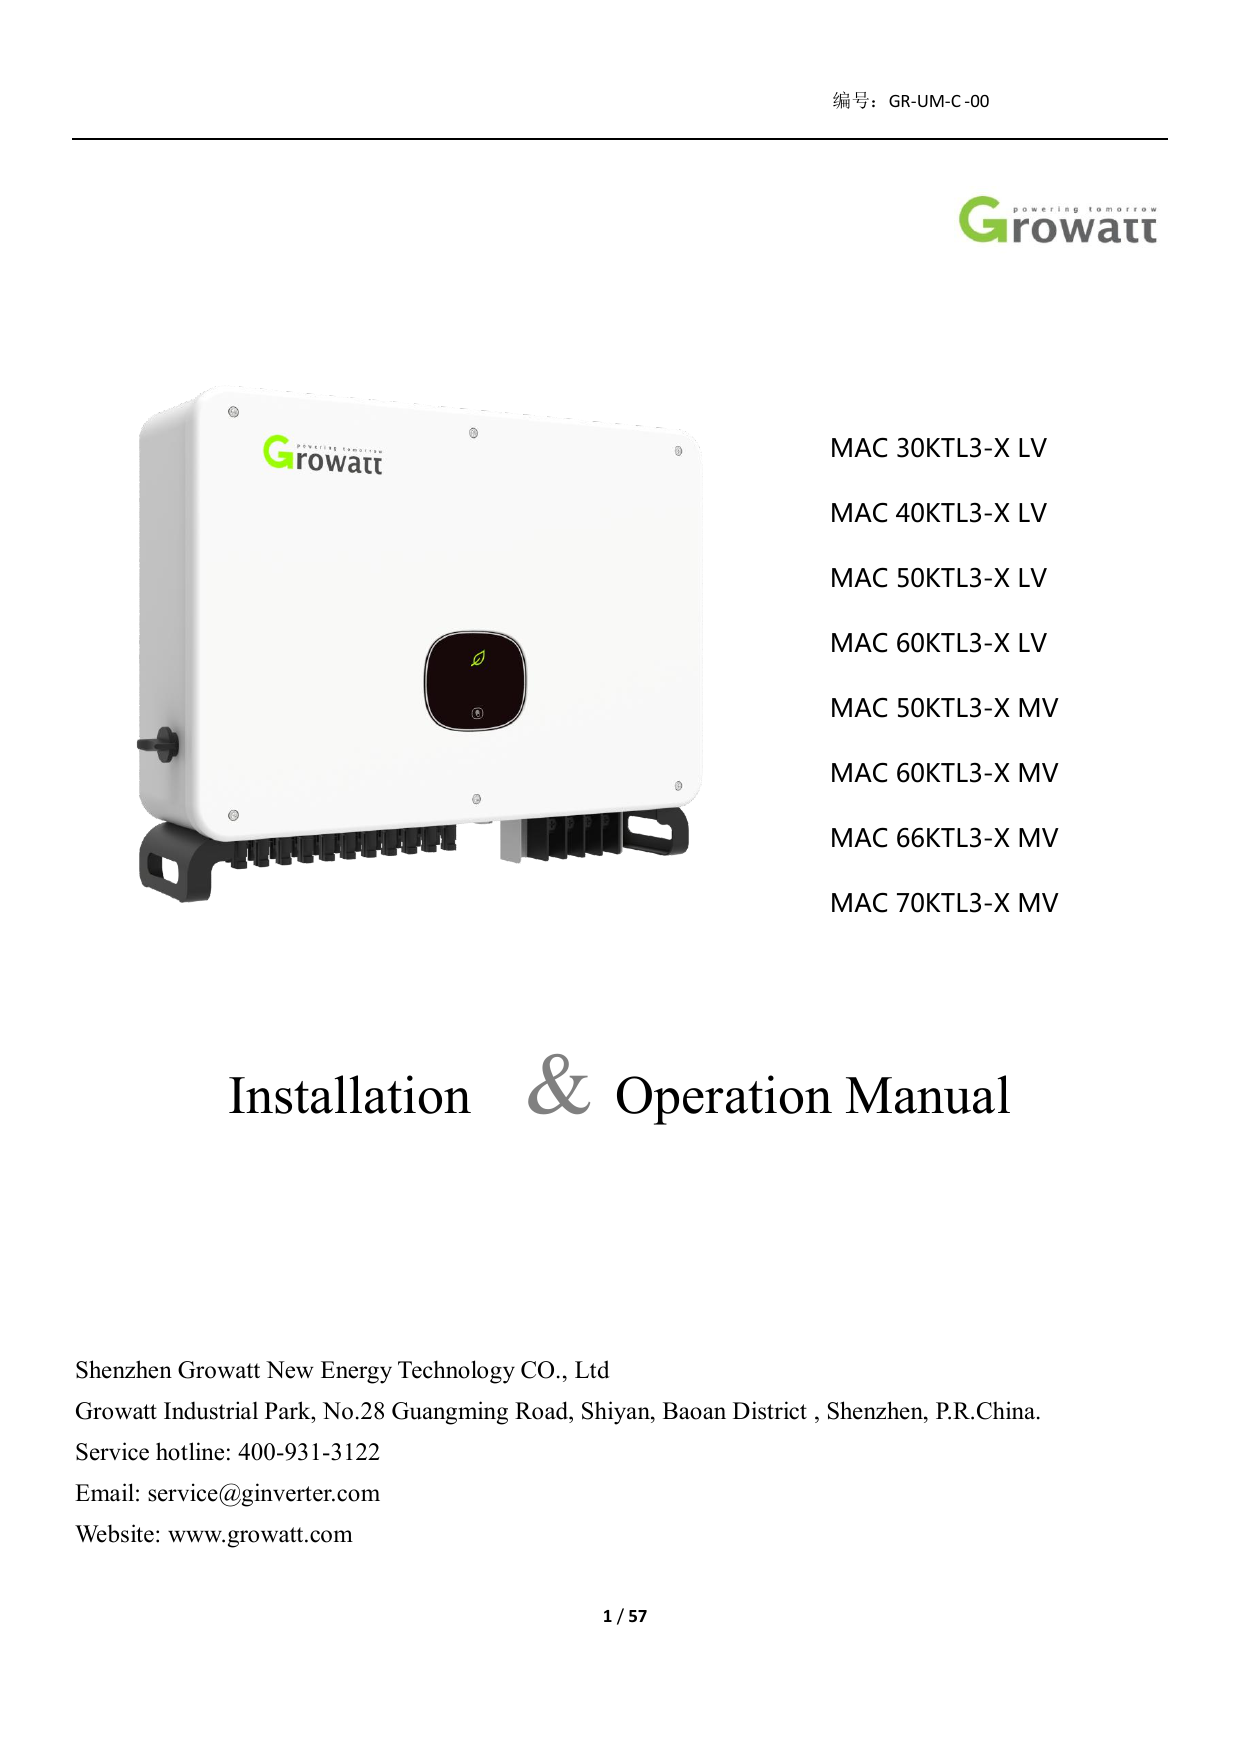 User manual Growatt MAX 100KTL3-X LV (English - 37 pages)